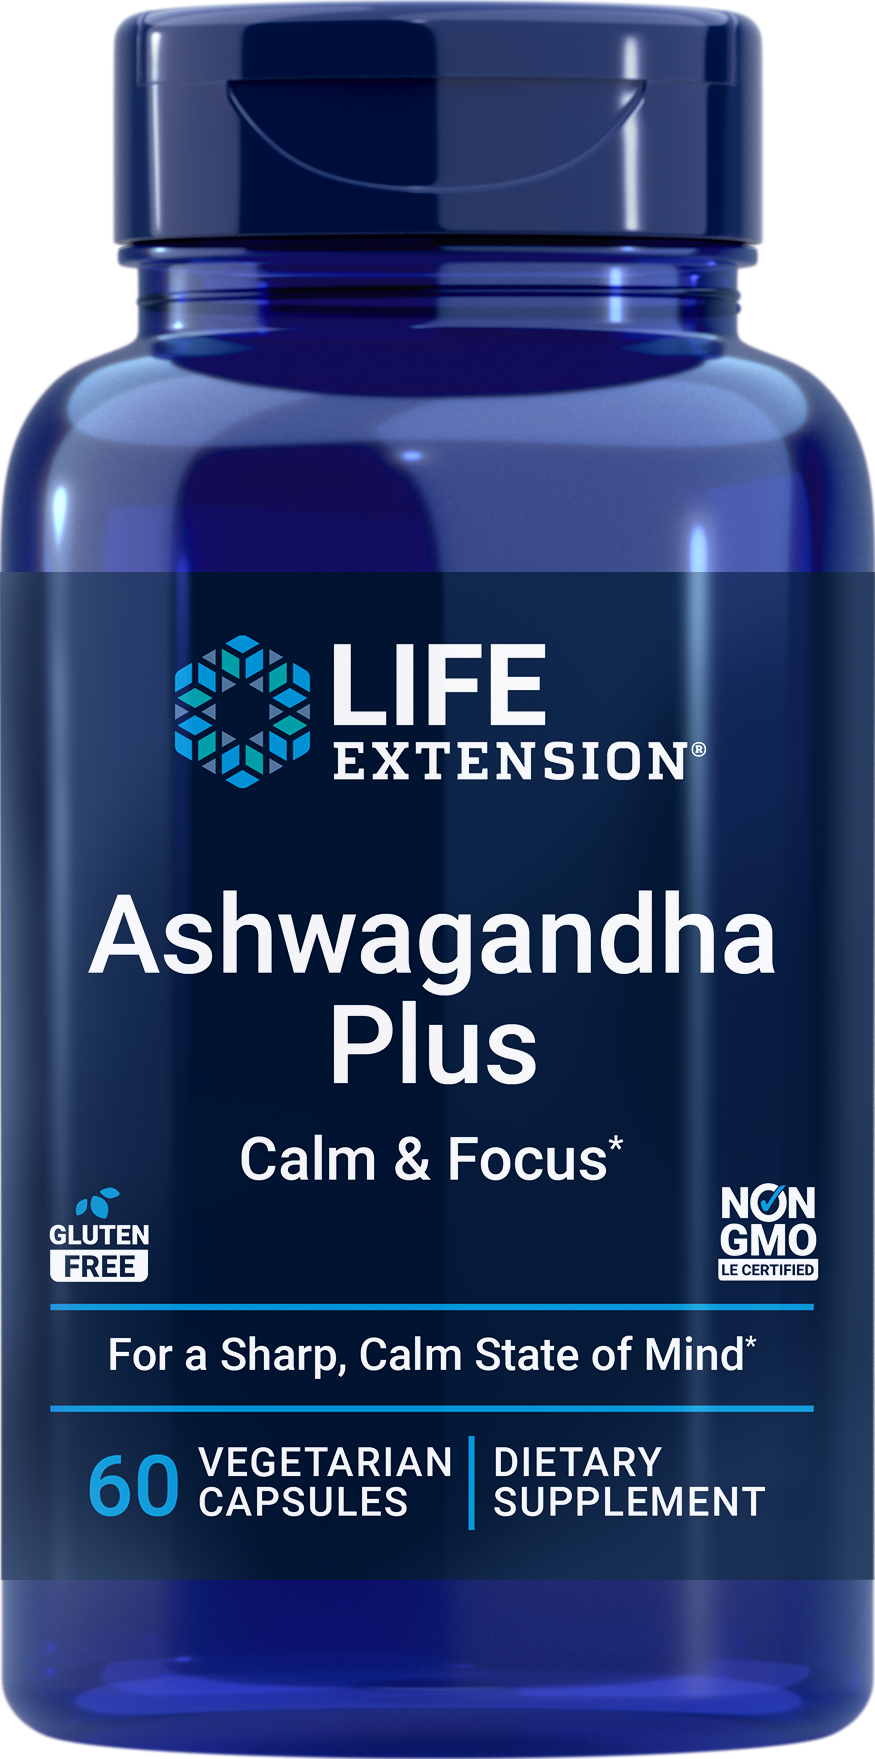 Ashwagandha Plus Calm & Focus contiene ashwagandha clínicamente estudiada para la relajación y extractos de menta verde para la concentración y la atención.